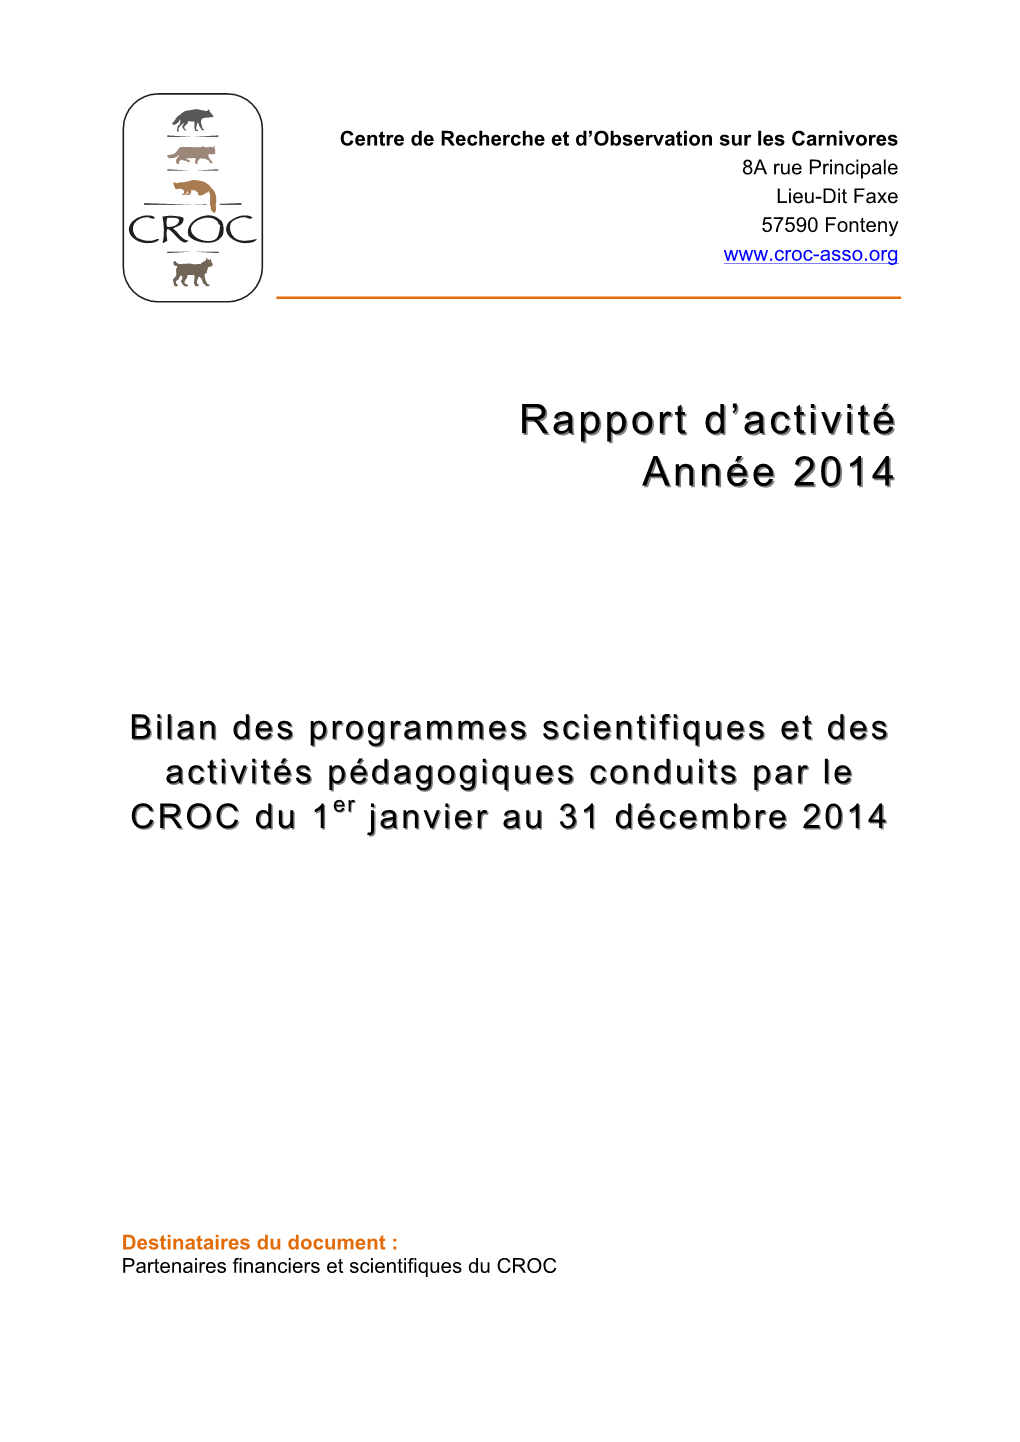 CROC CR Activité Année 2014 2015 05 20Dld.Pdf